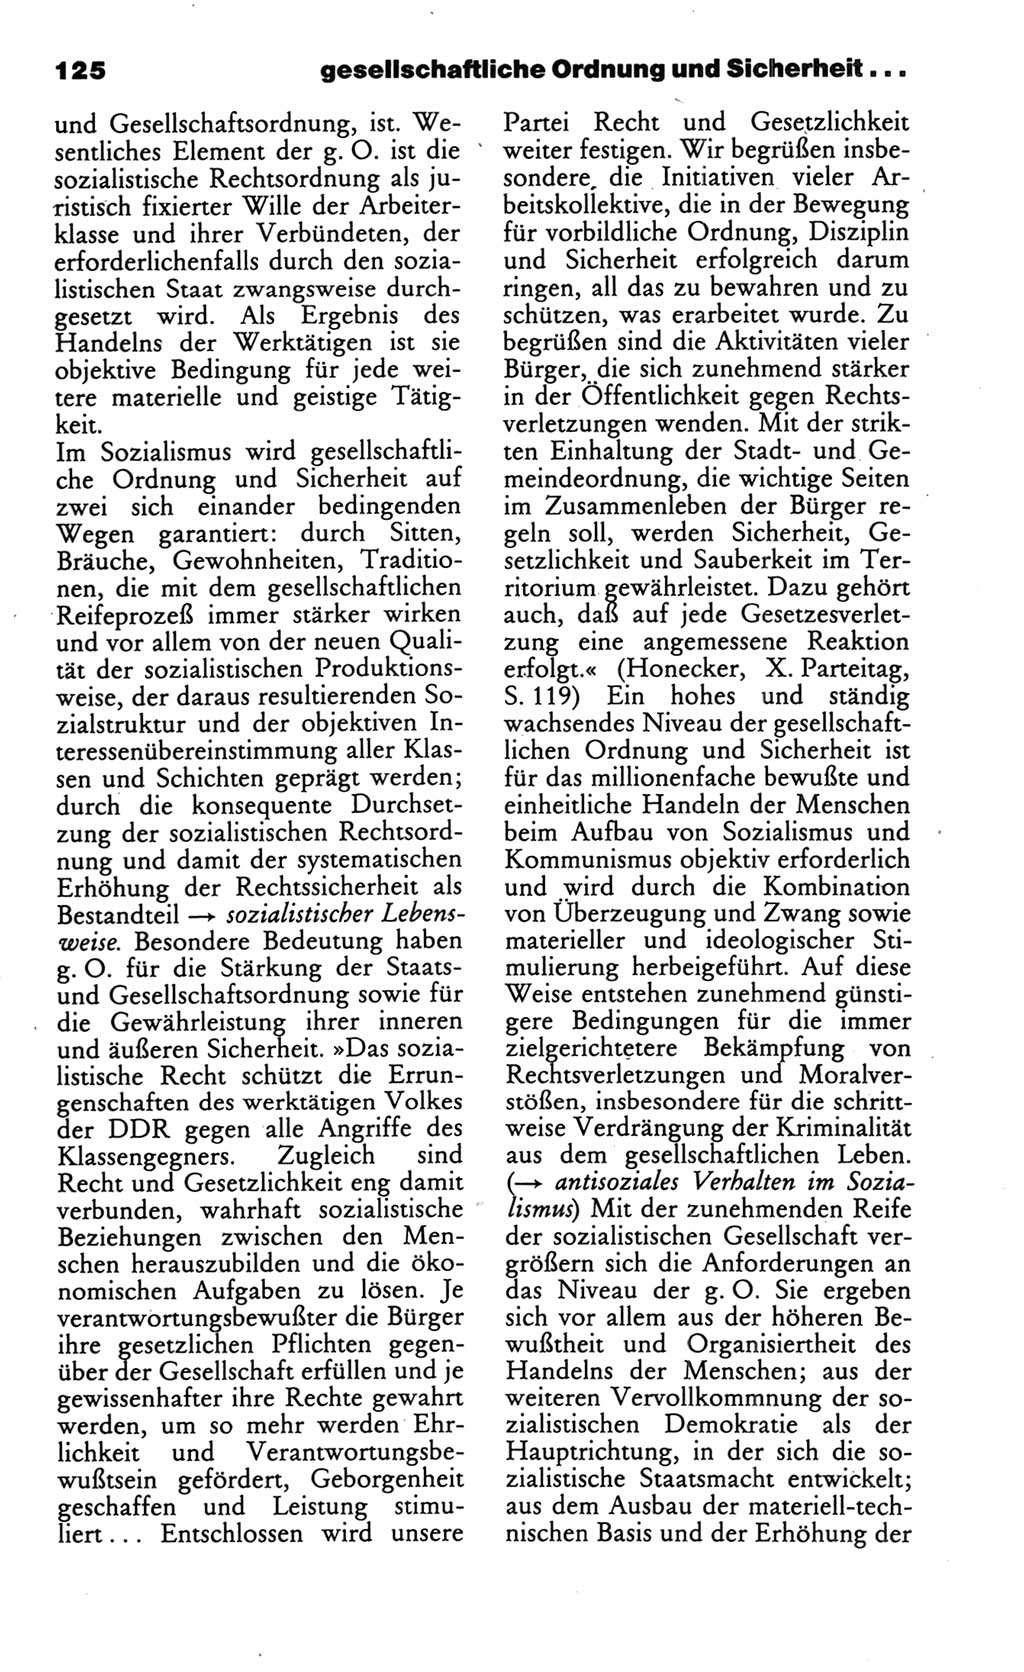 Wörterbuch des wissenschaftlichen Kommunismus [Deutsche Demokratische Republik (DDR)] 1986, Seite 125 (Wb. wiss. Komm. DDR 1986, S. 125)